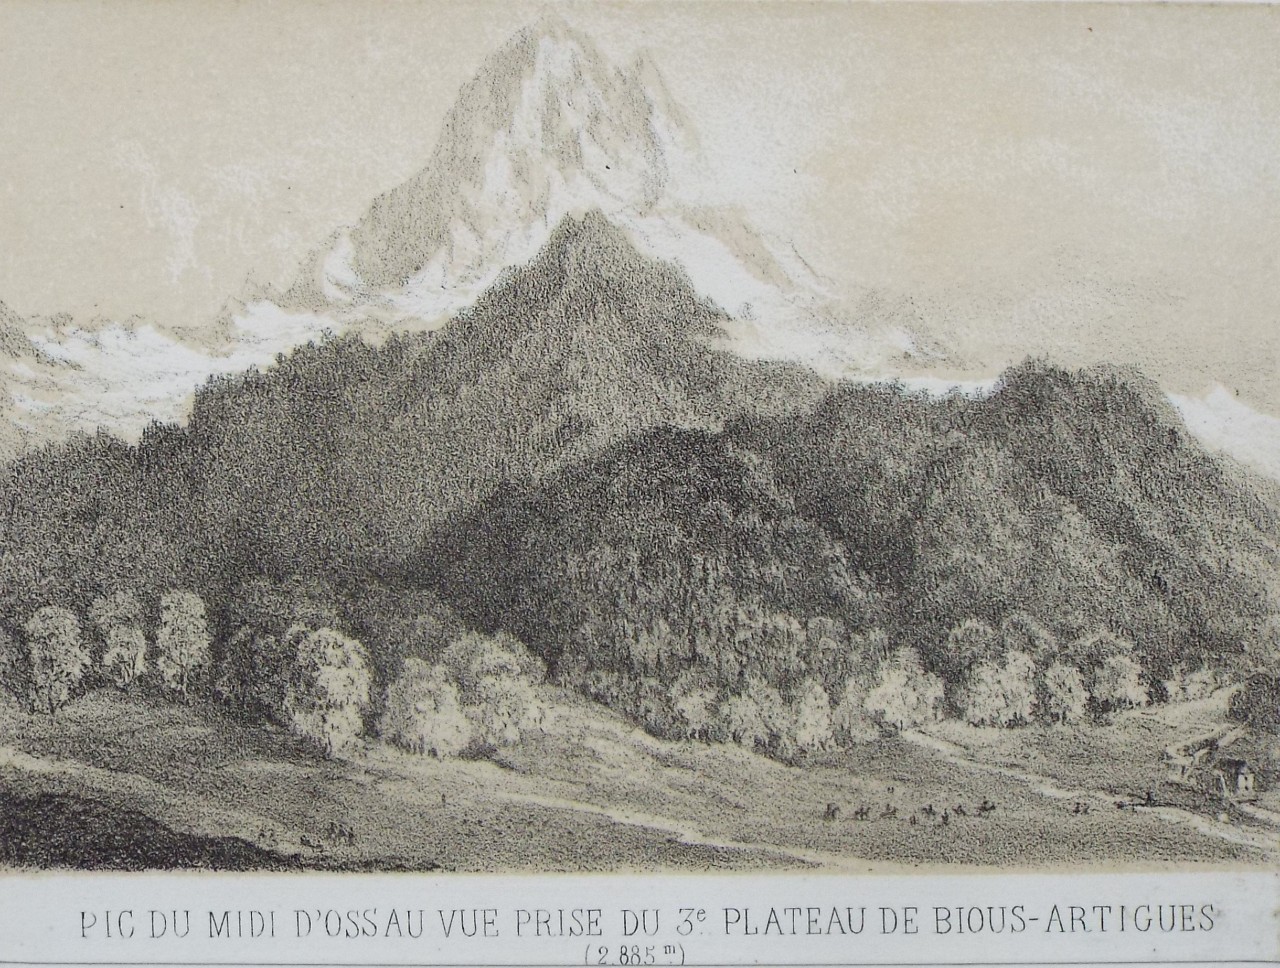 Lithograph - Pic du Midi d'Ossau vue prise du 3e Plateau de Bious-Artigues (2,885 m.)